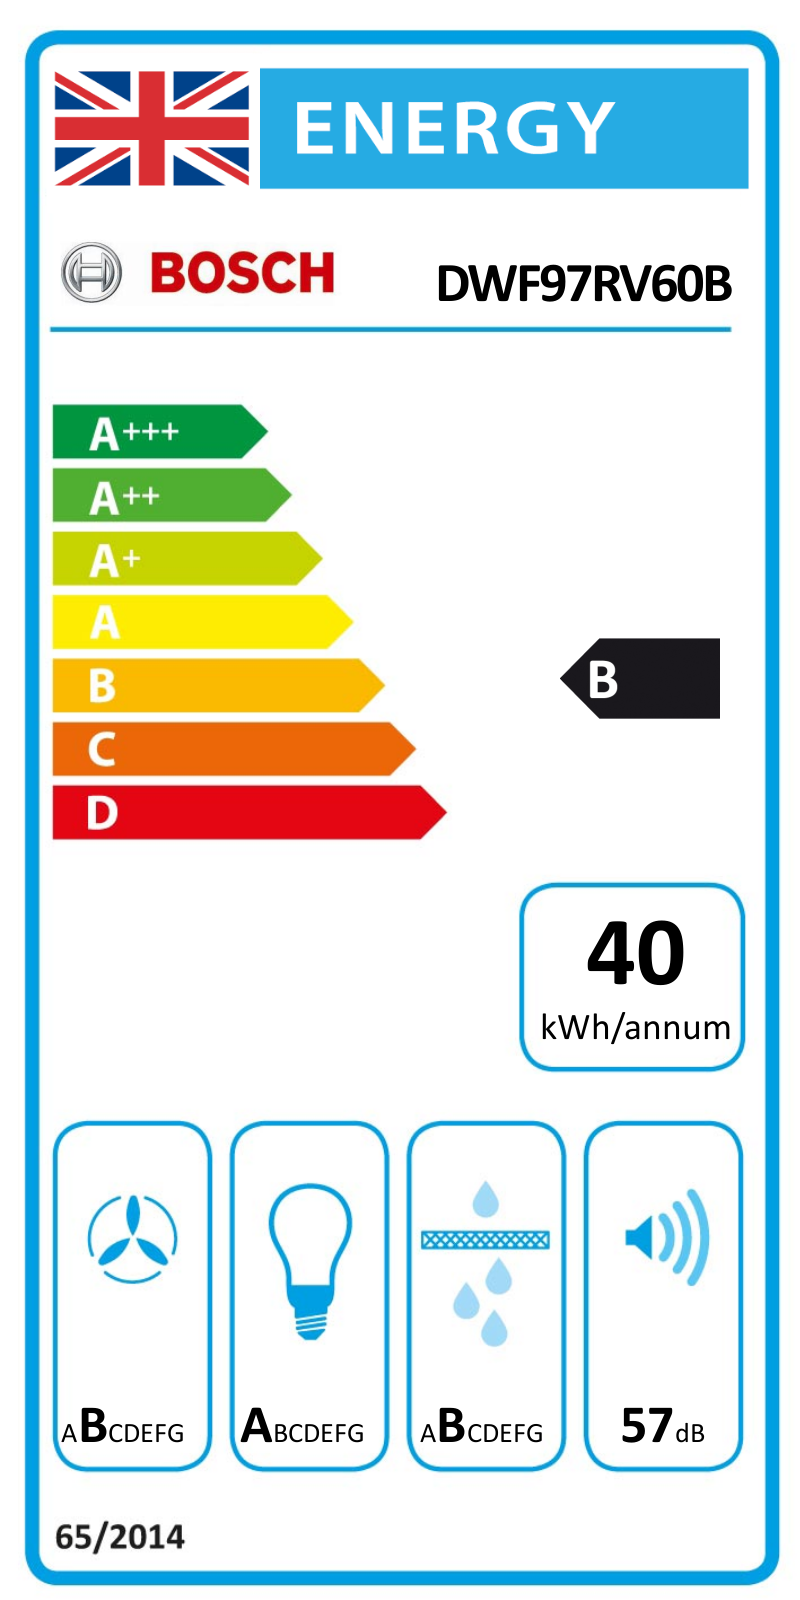 Bosch DWF97RV60B EU Energy Label